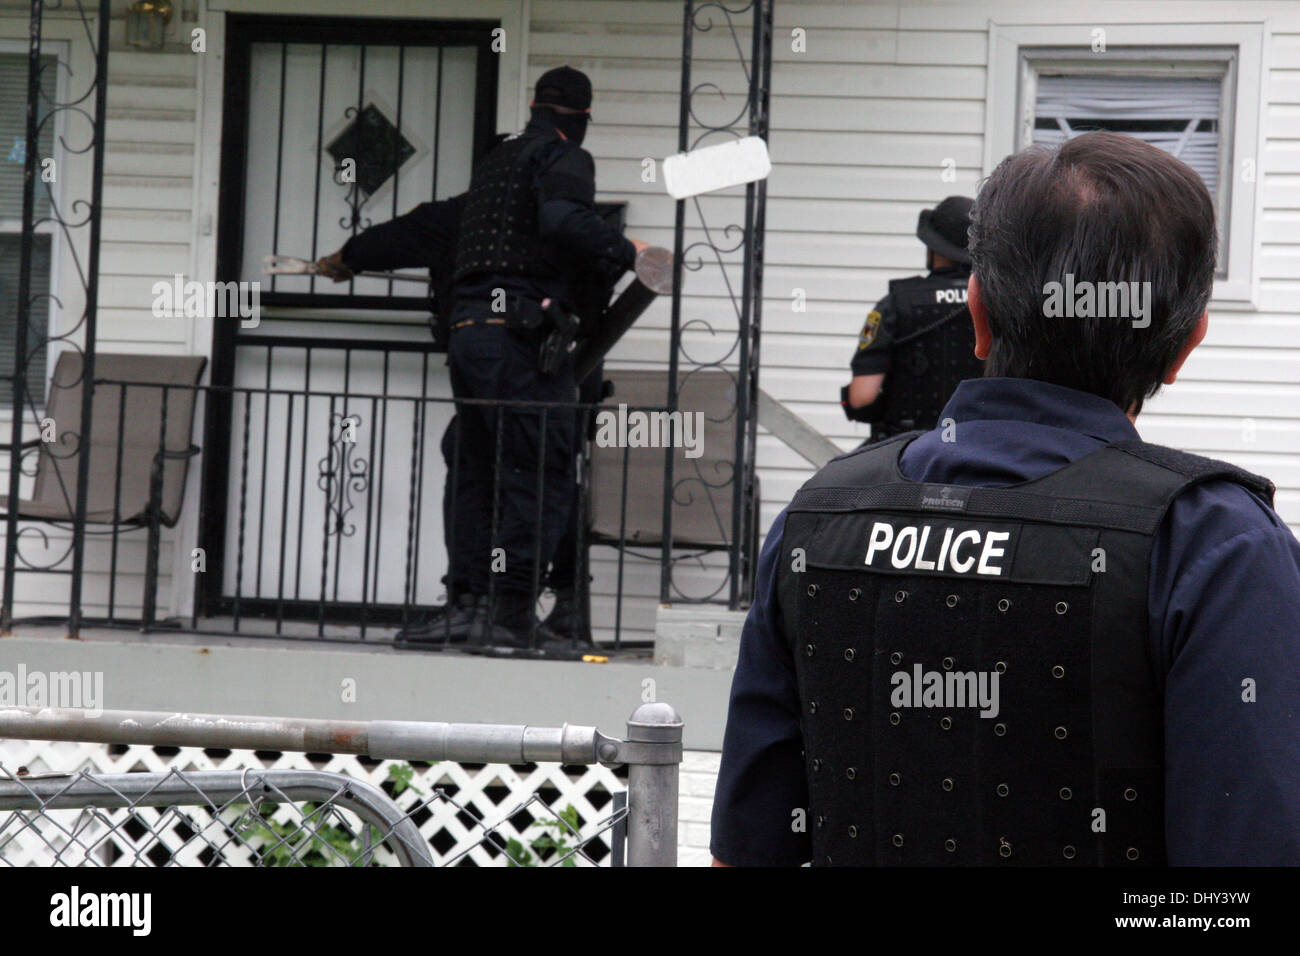 La police de Detroit - agents narcotiques Narcs - forcer l'entrée d'une maison au cours d'un raid en médicaments, à Détroit, Michigan, USA Banque D'Images